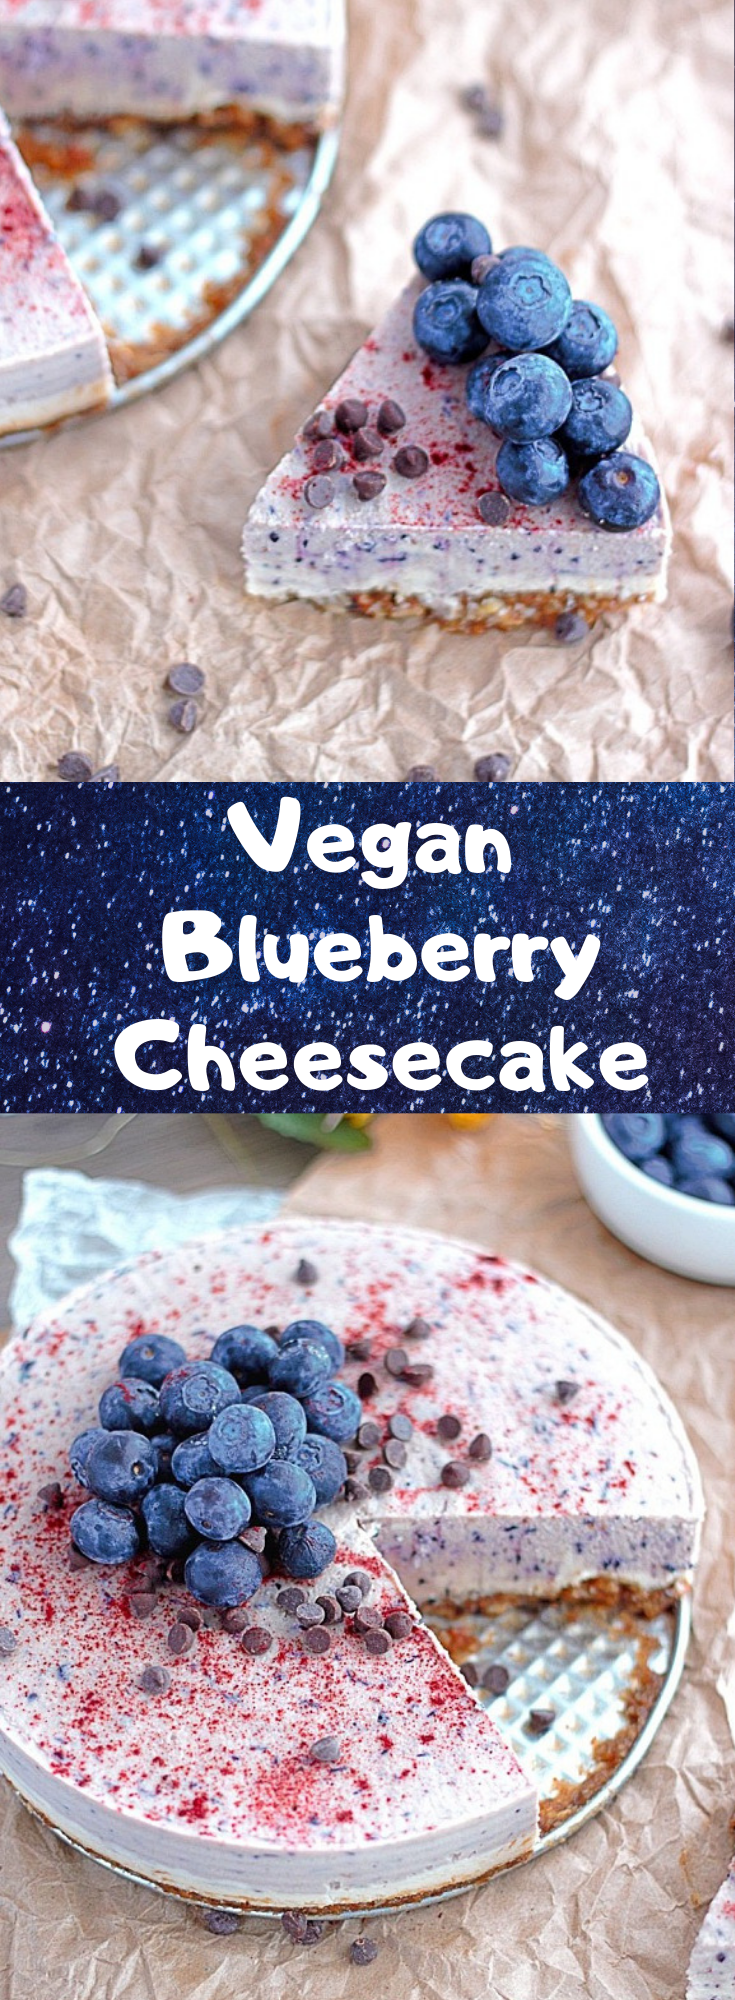 Vegan Blueberry Cheesecake -   18 diet desserts vegan
 ideas